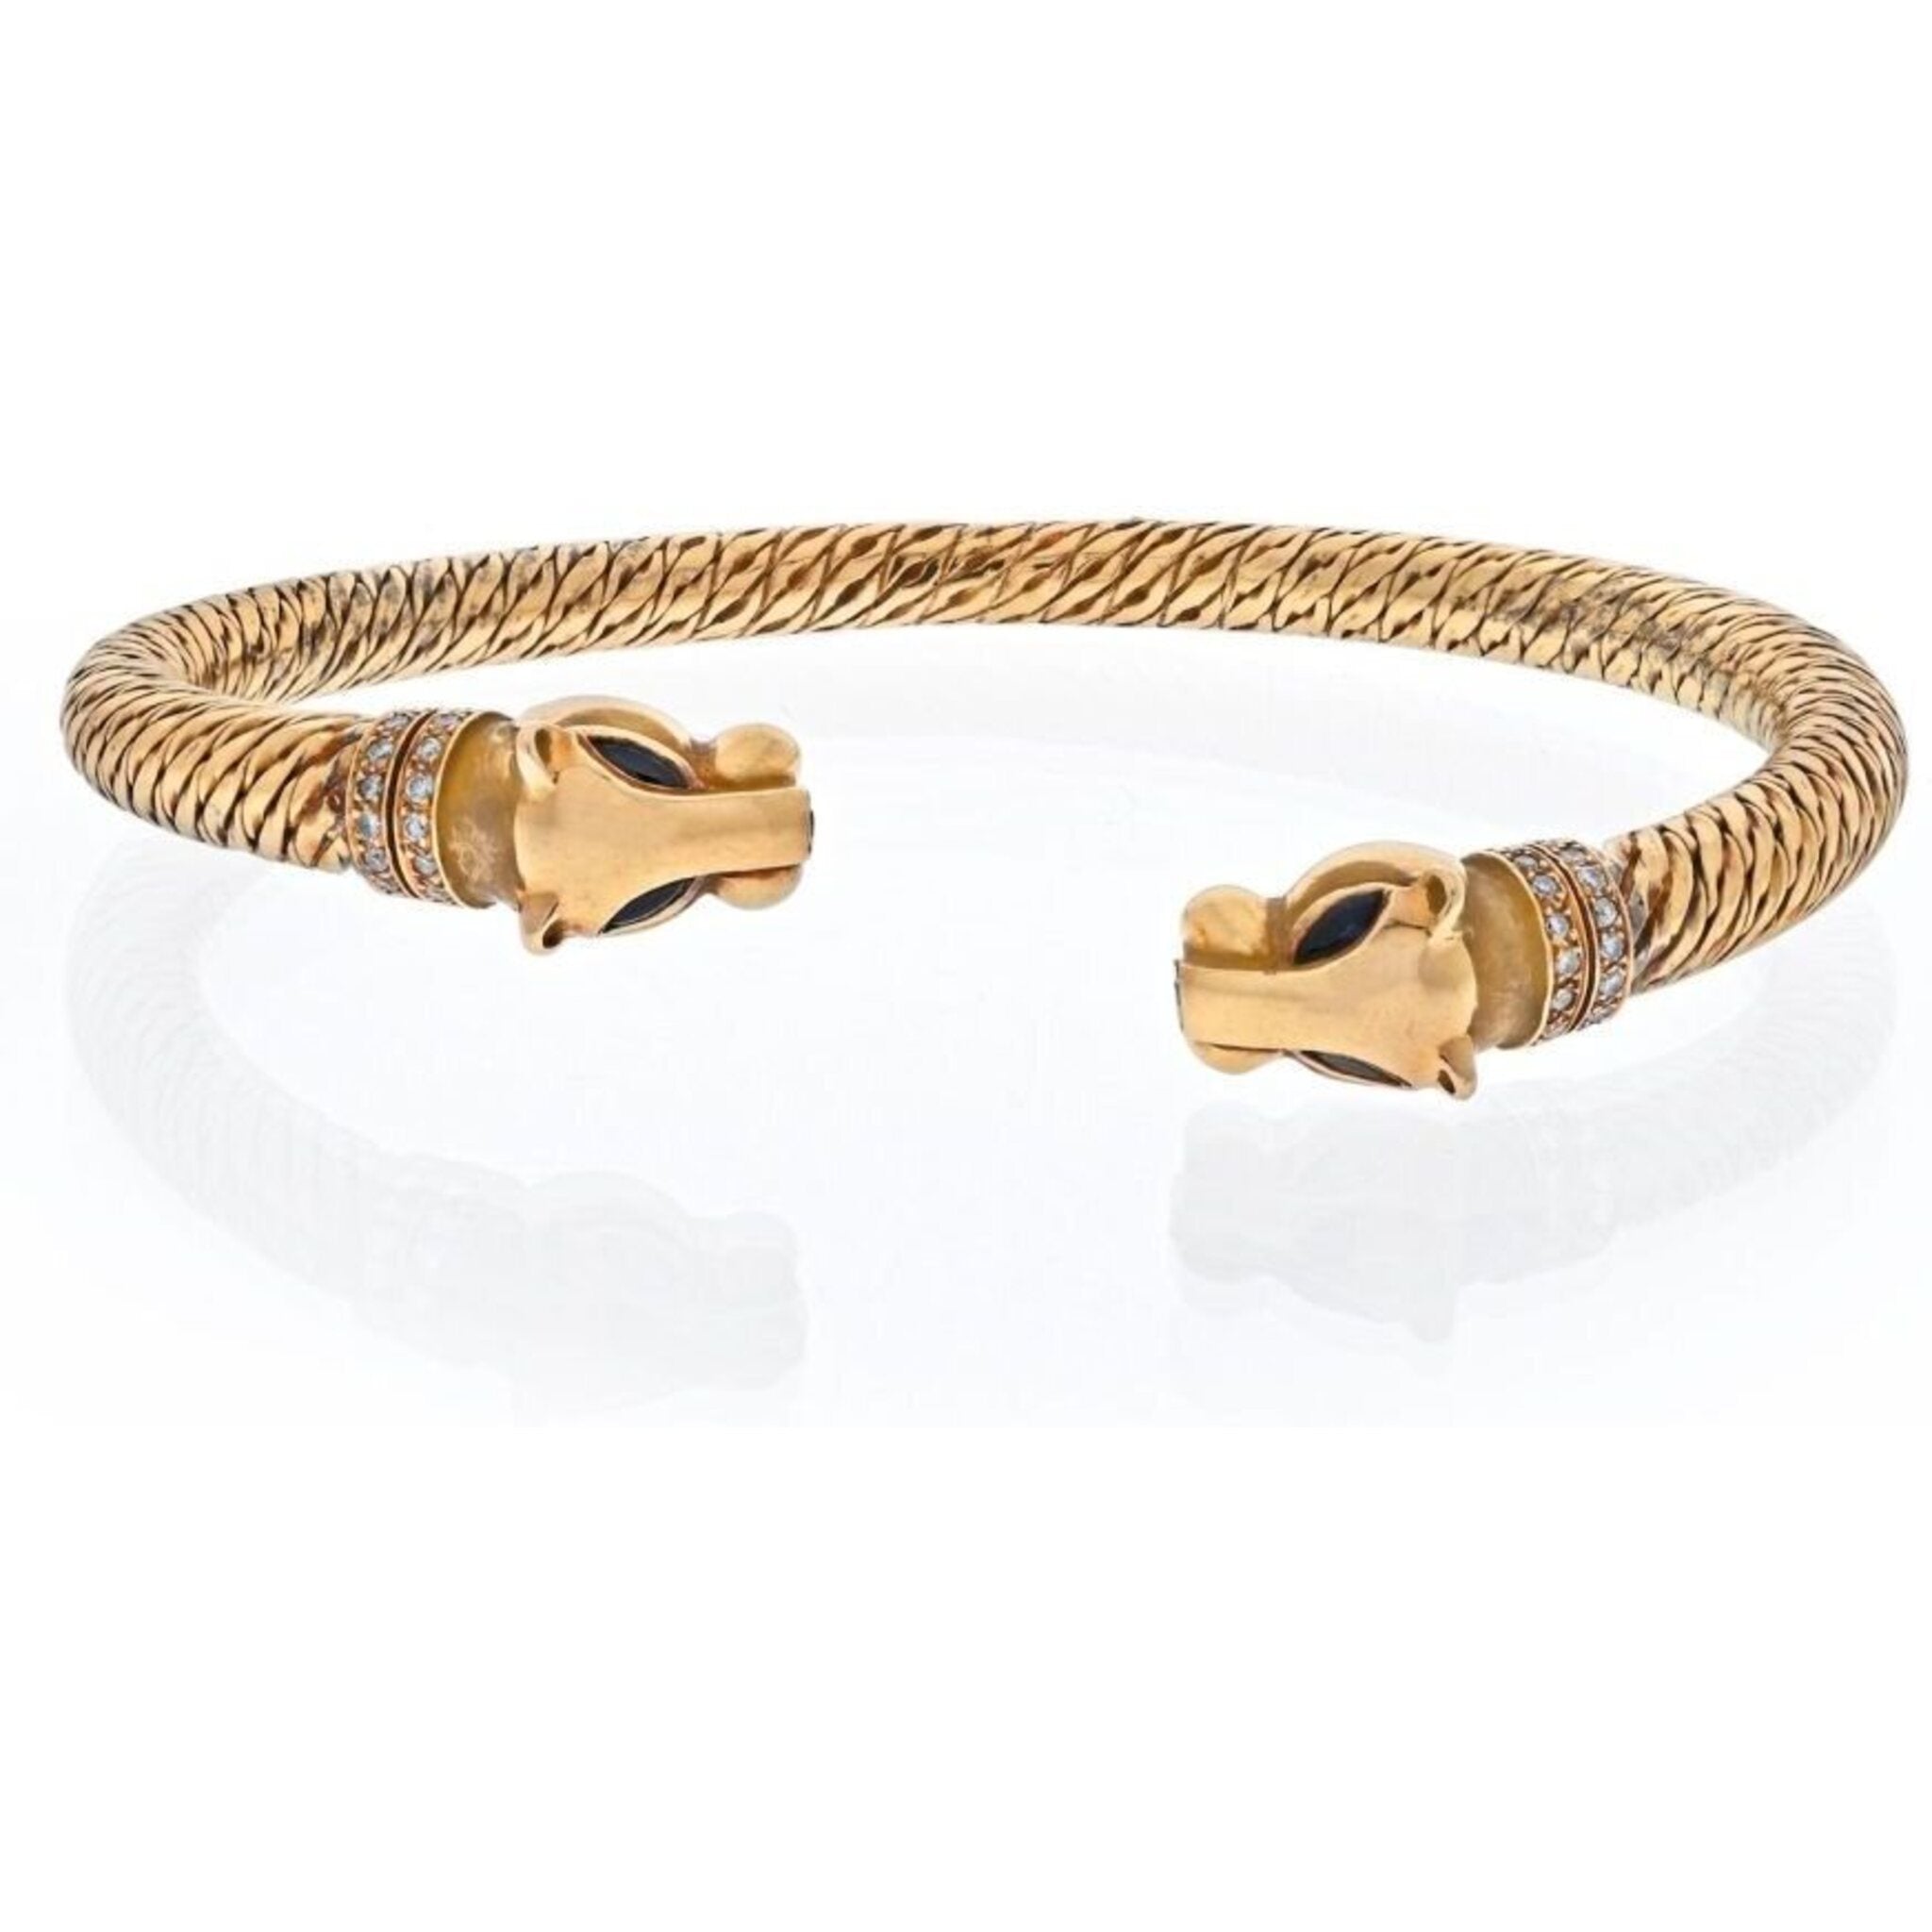 Bracelet cartier - Buy your most satisfactory cartier bracelet